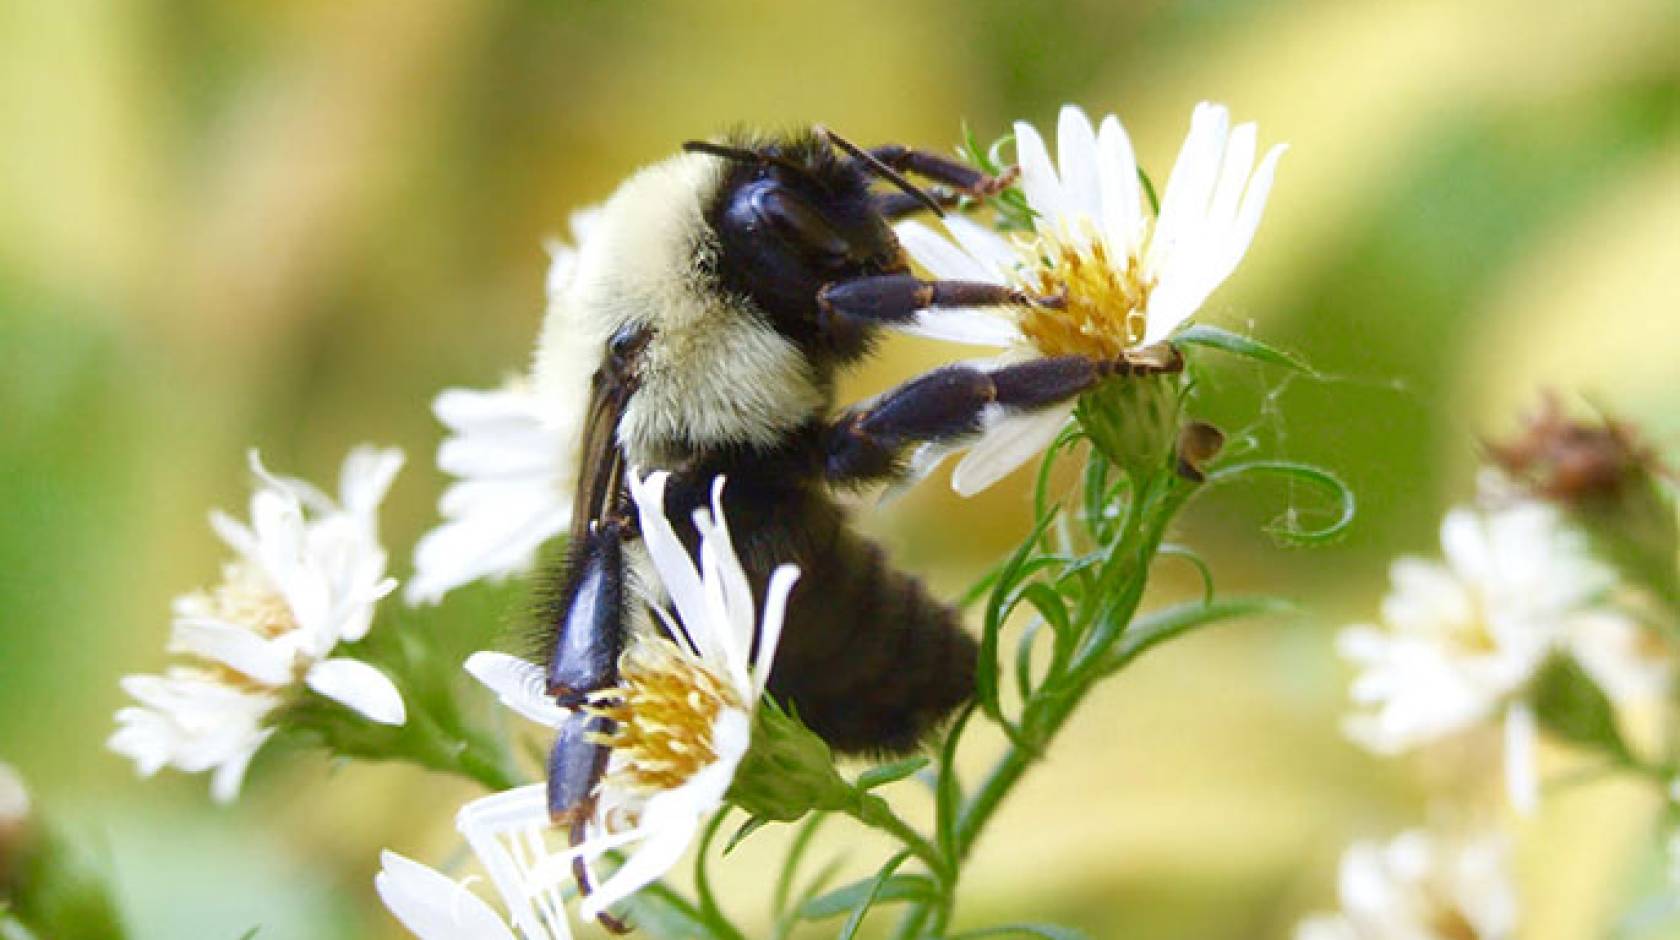 A queen bumblebee on a flower